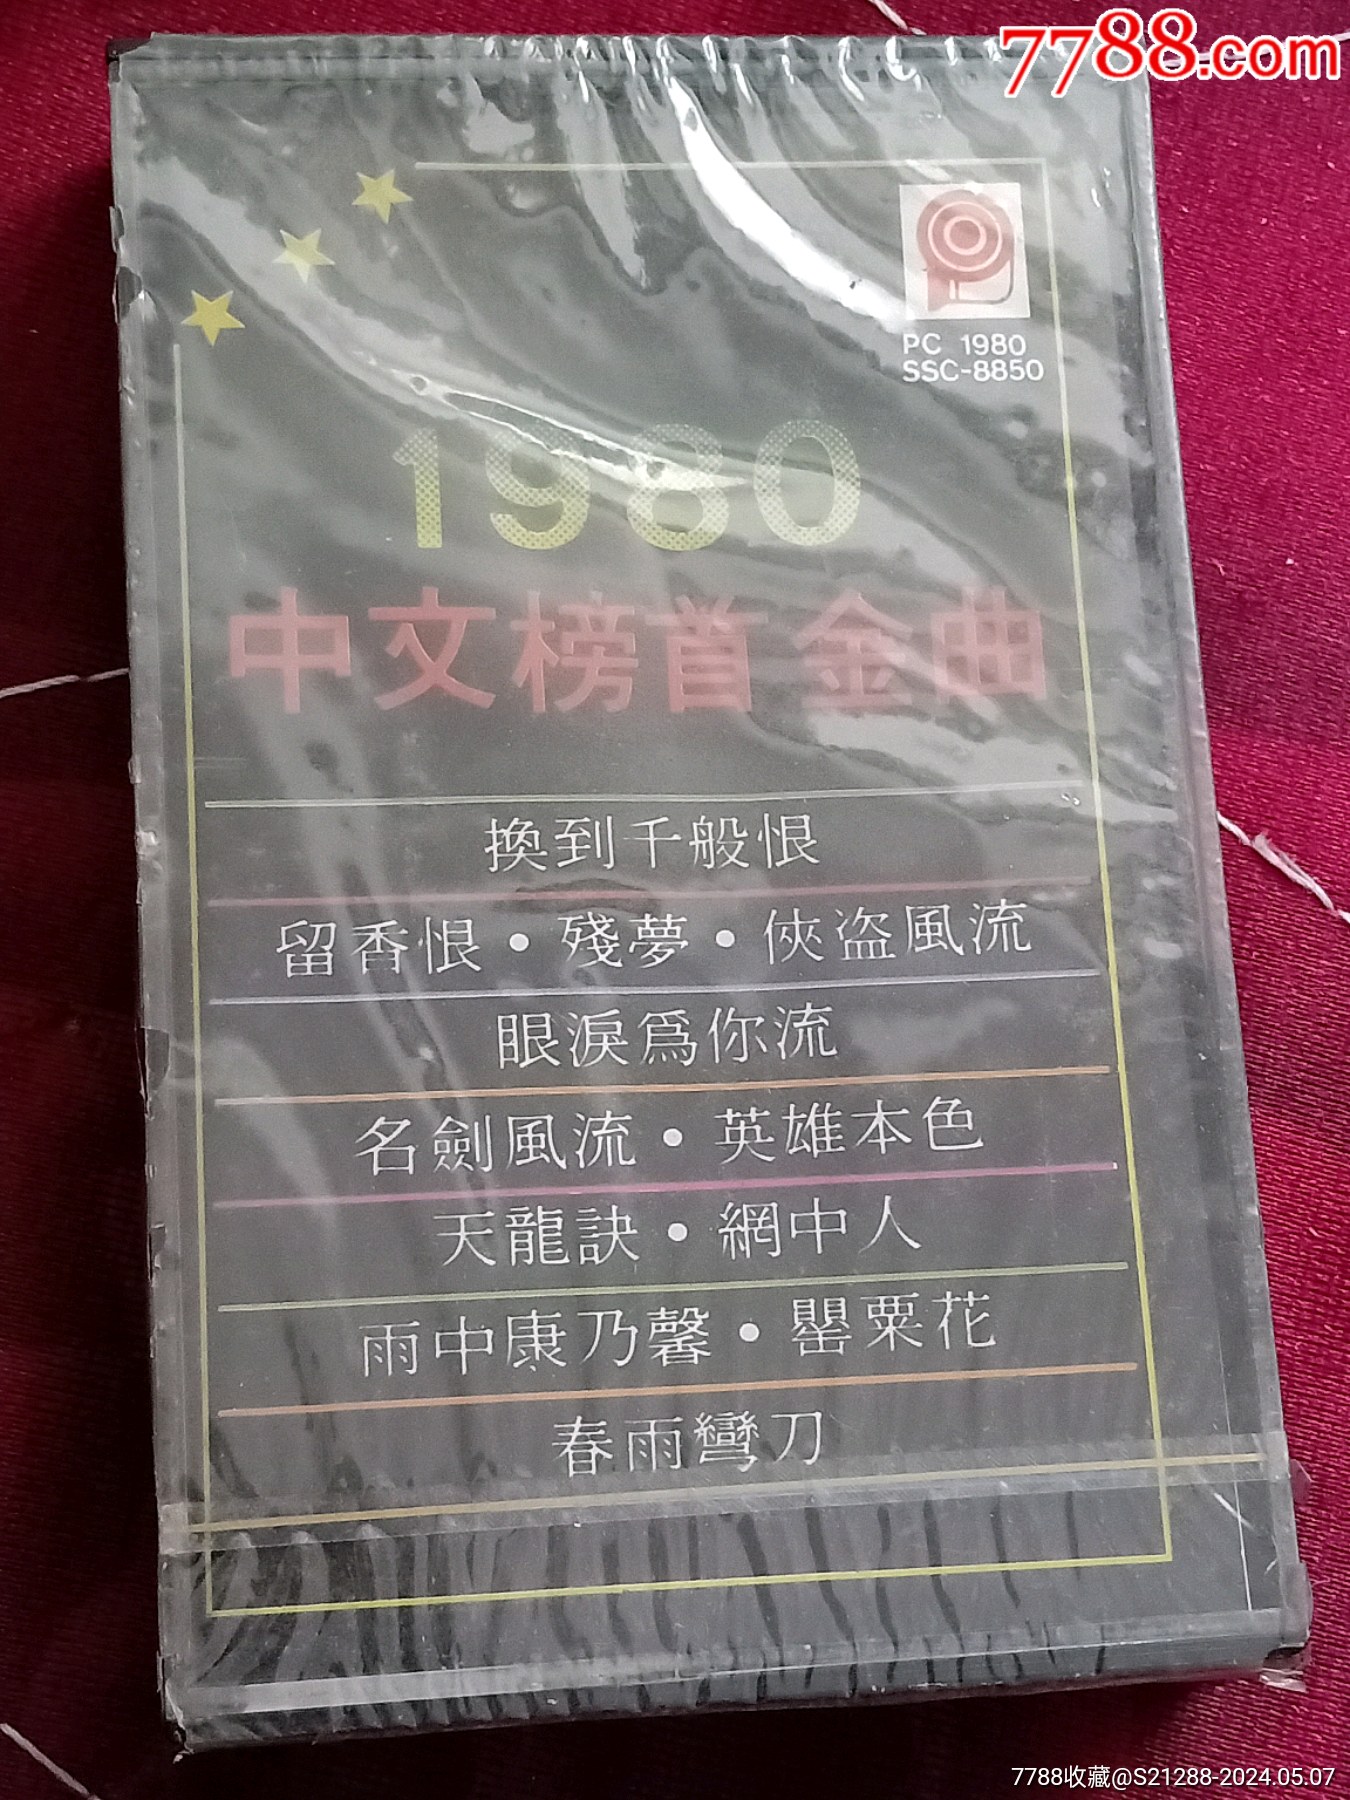 正版没拆封,1980中文榜首